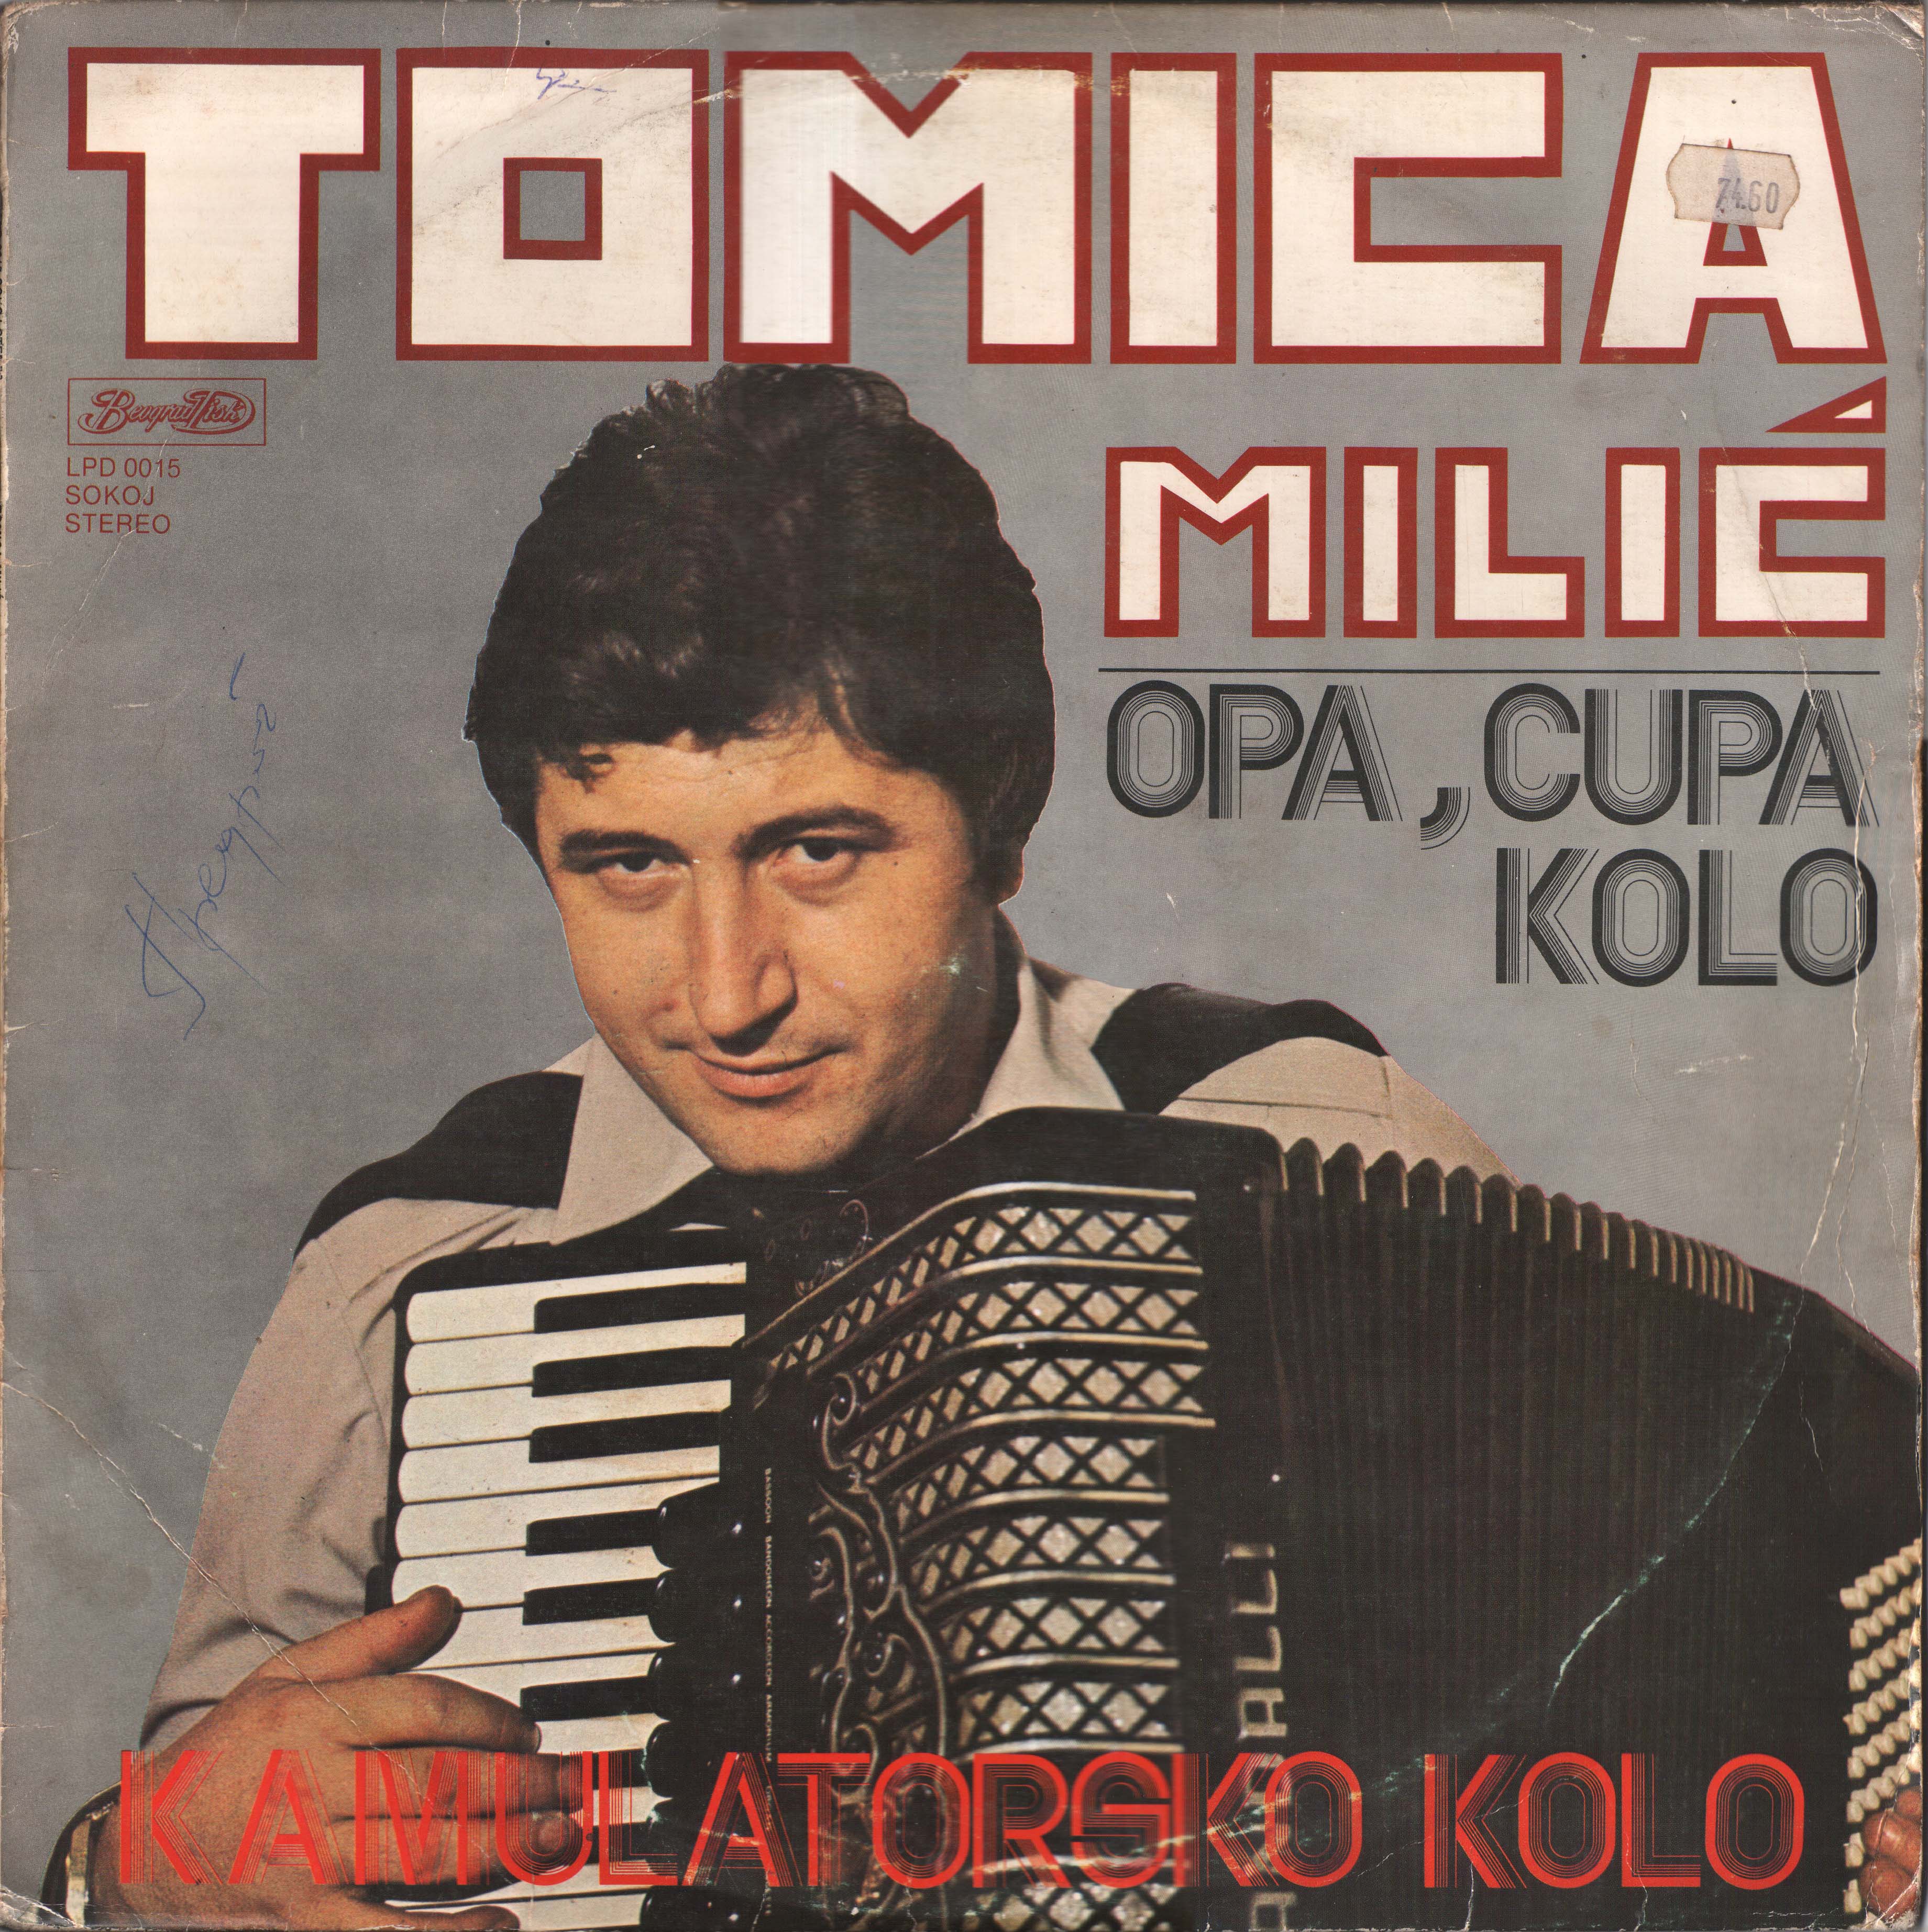 Tomica Miljic 1980 P